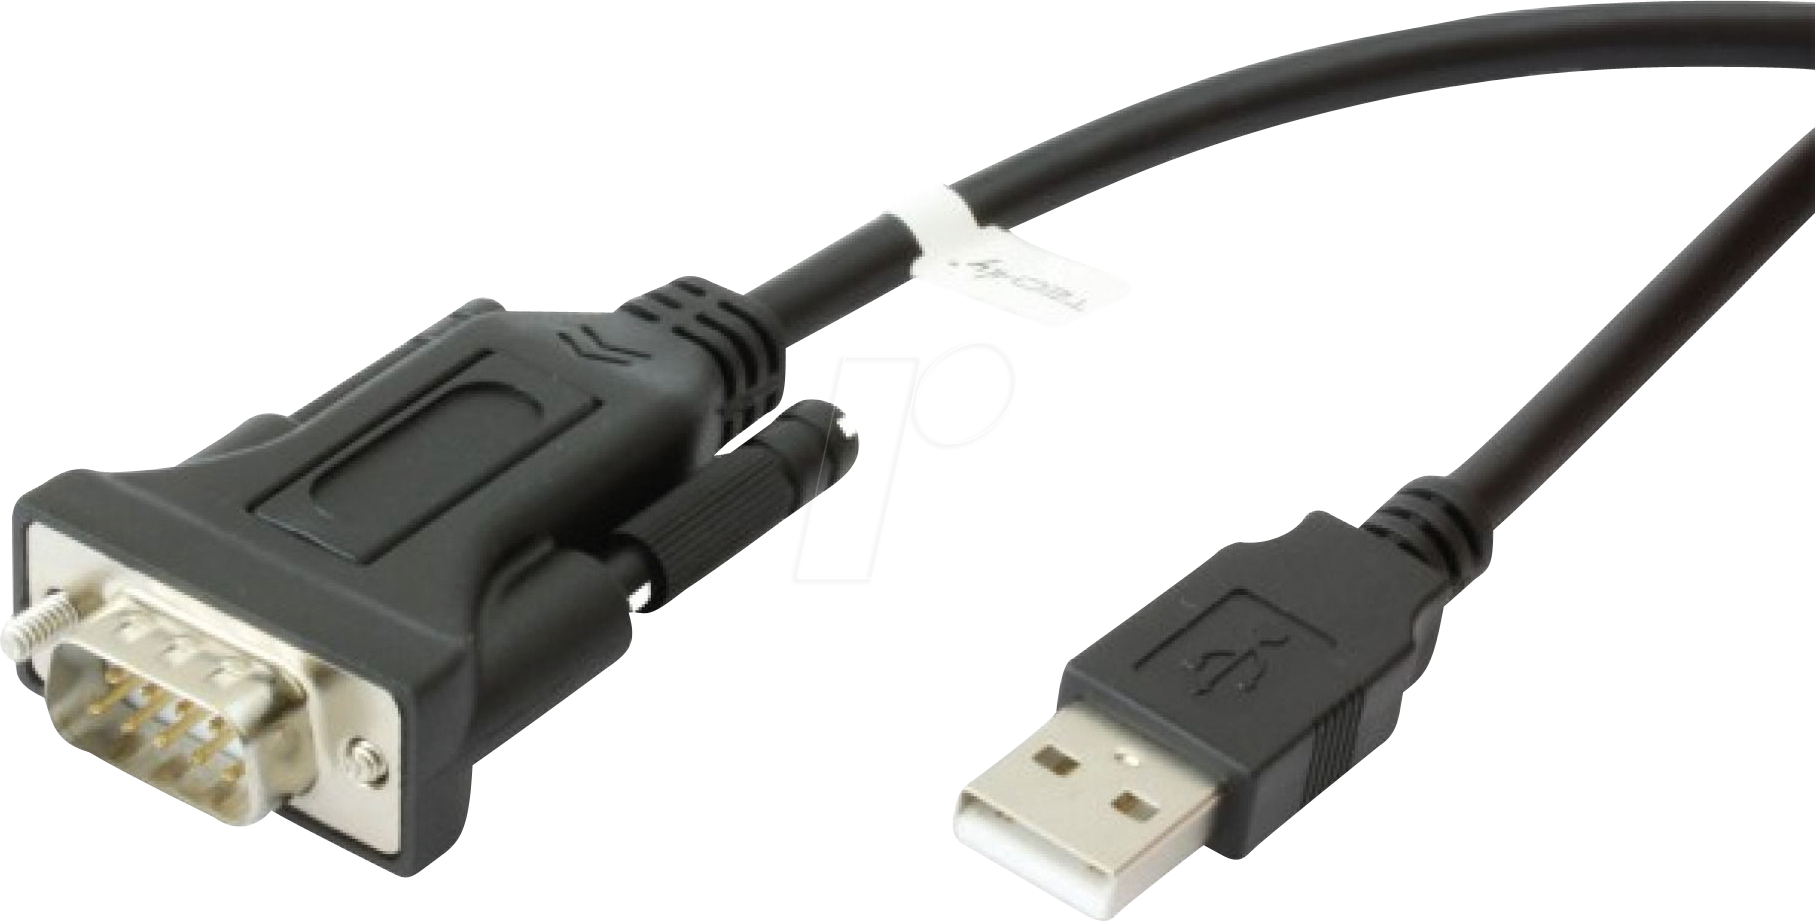 IDATA-USB2-SER-1 - Konverterkabel USB 2.0 auf RS-232, 1,5 m von TECHLY